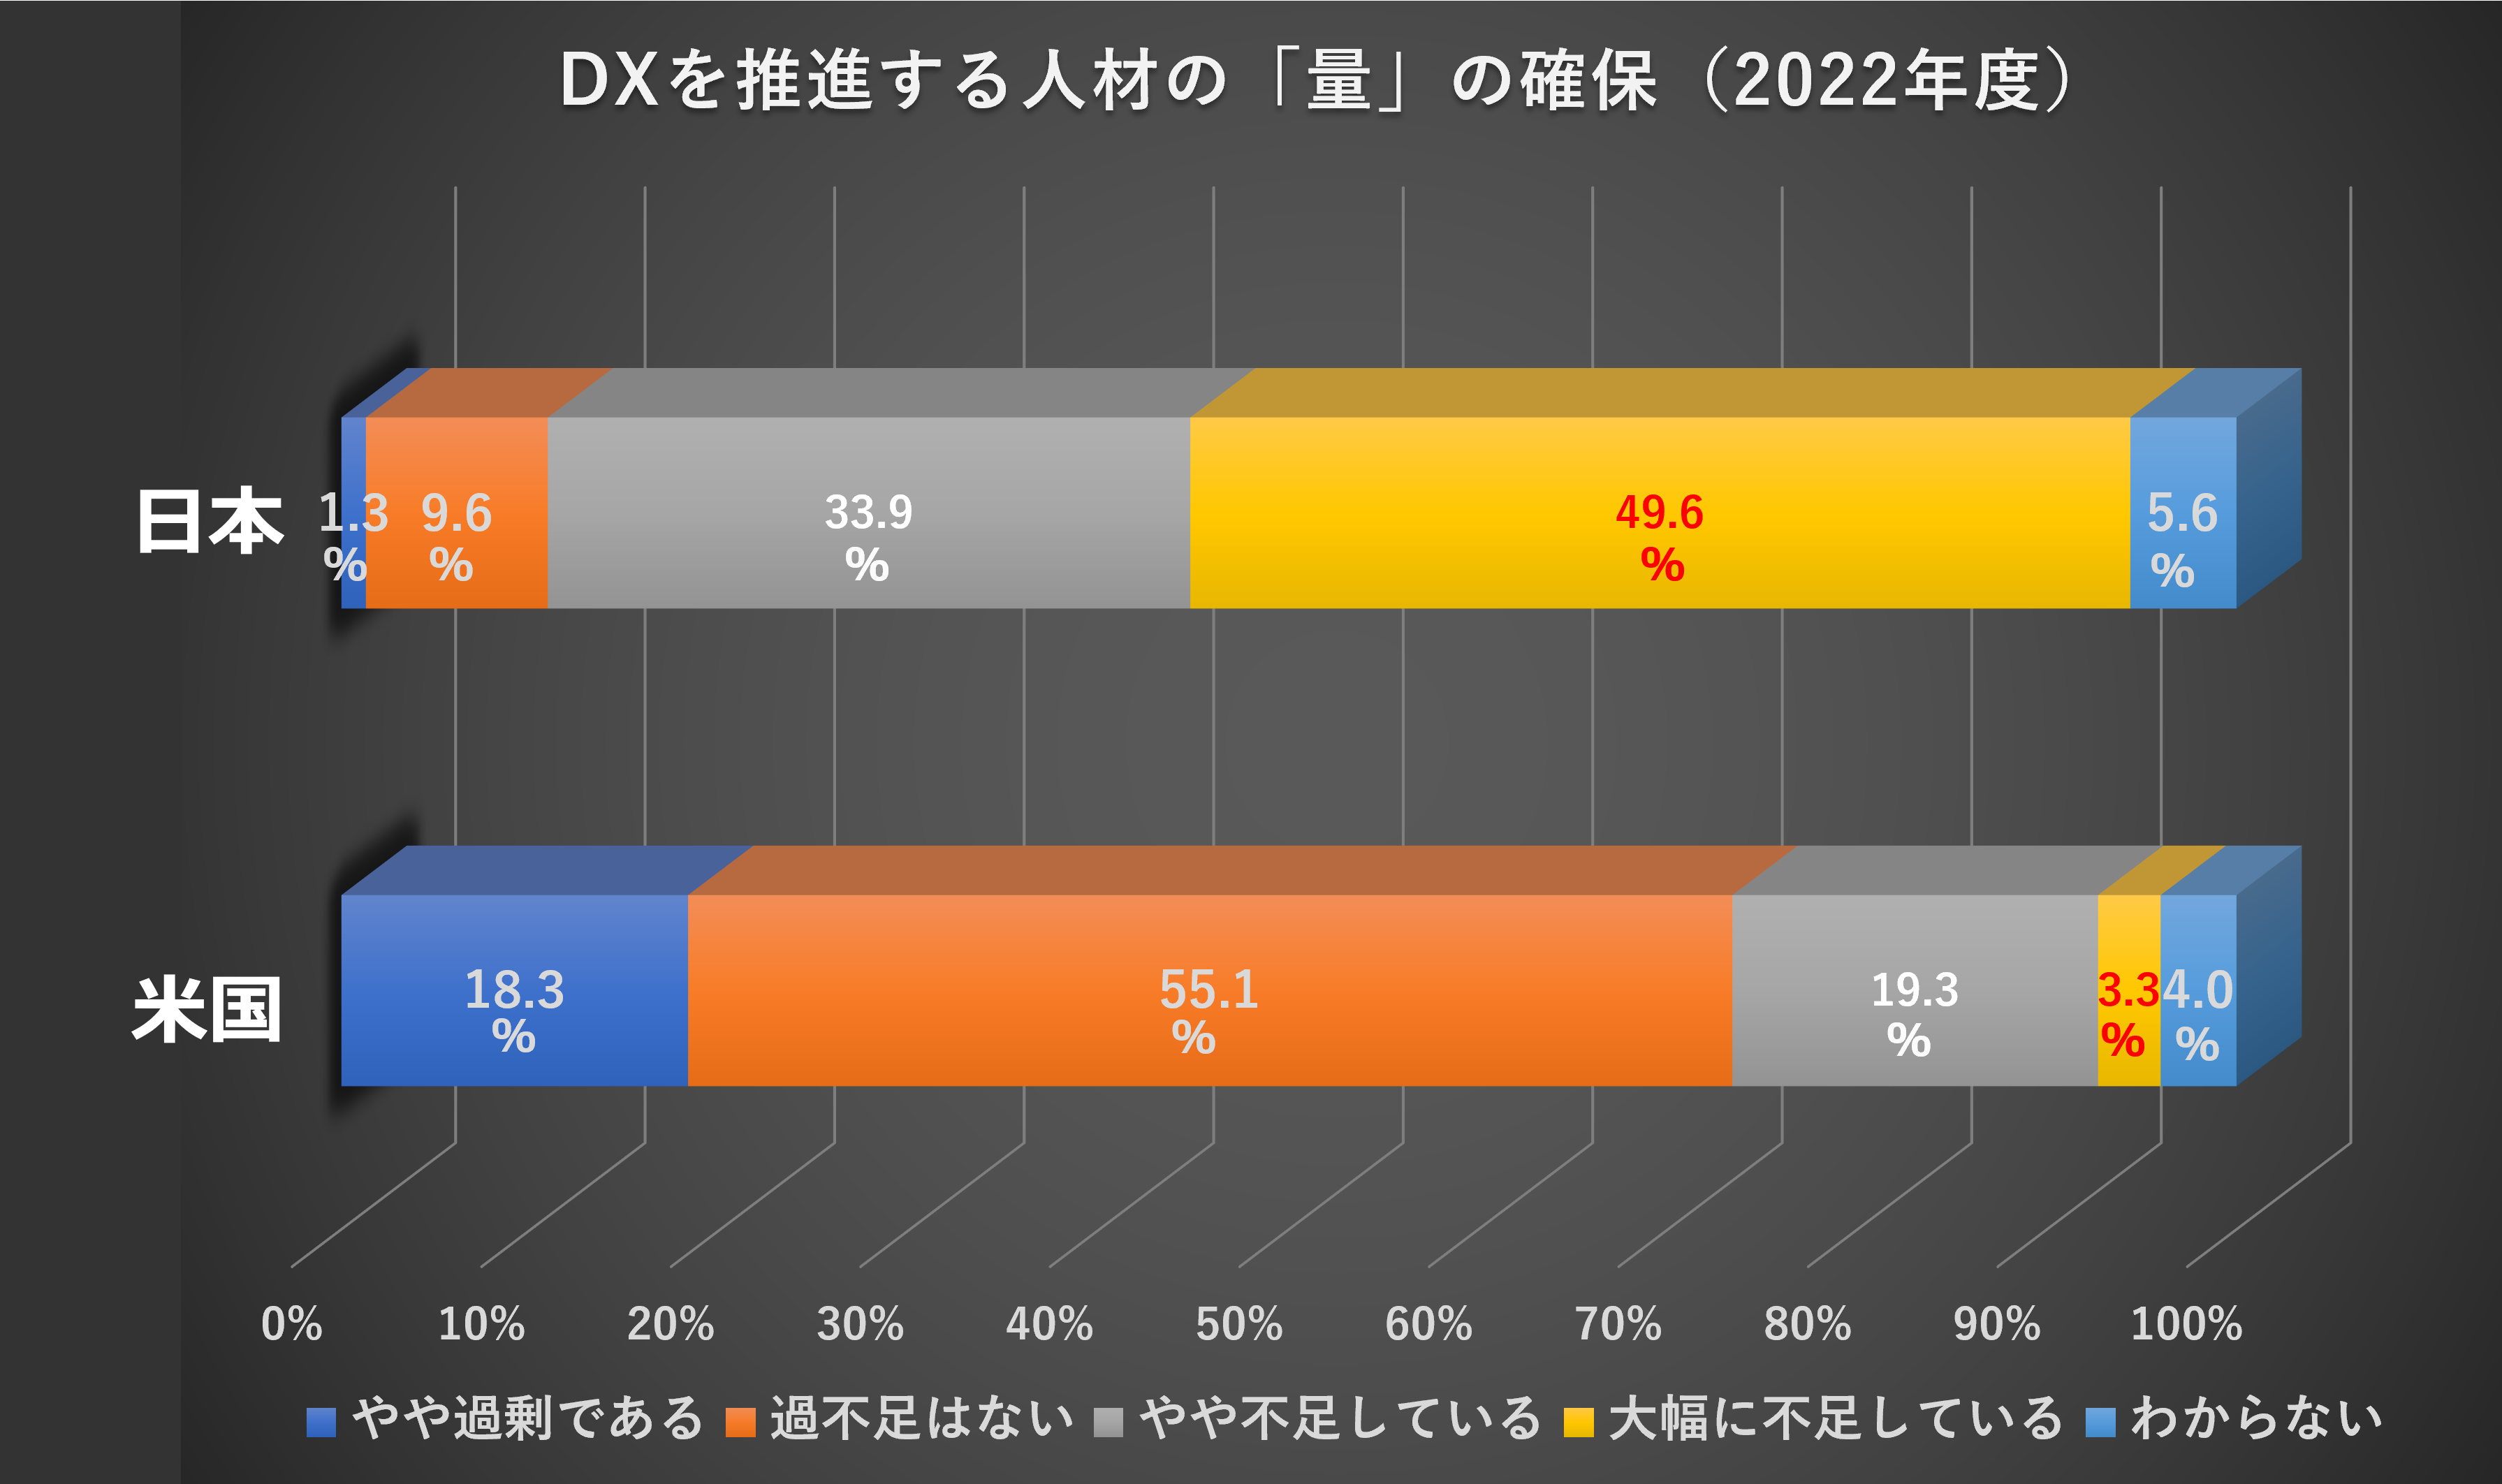 DXを推進する人材の「量」の確保（2022年度）